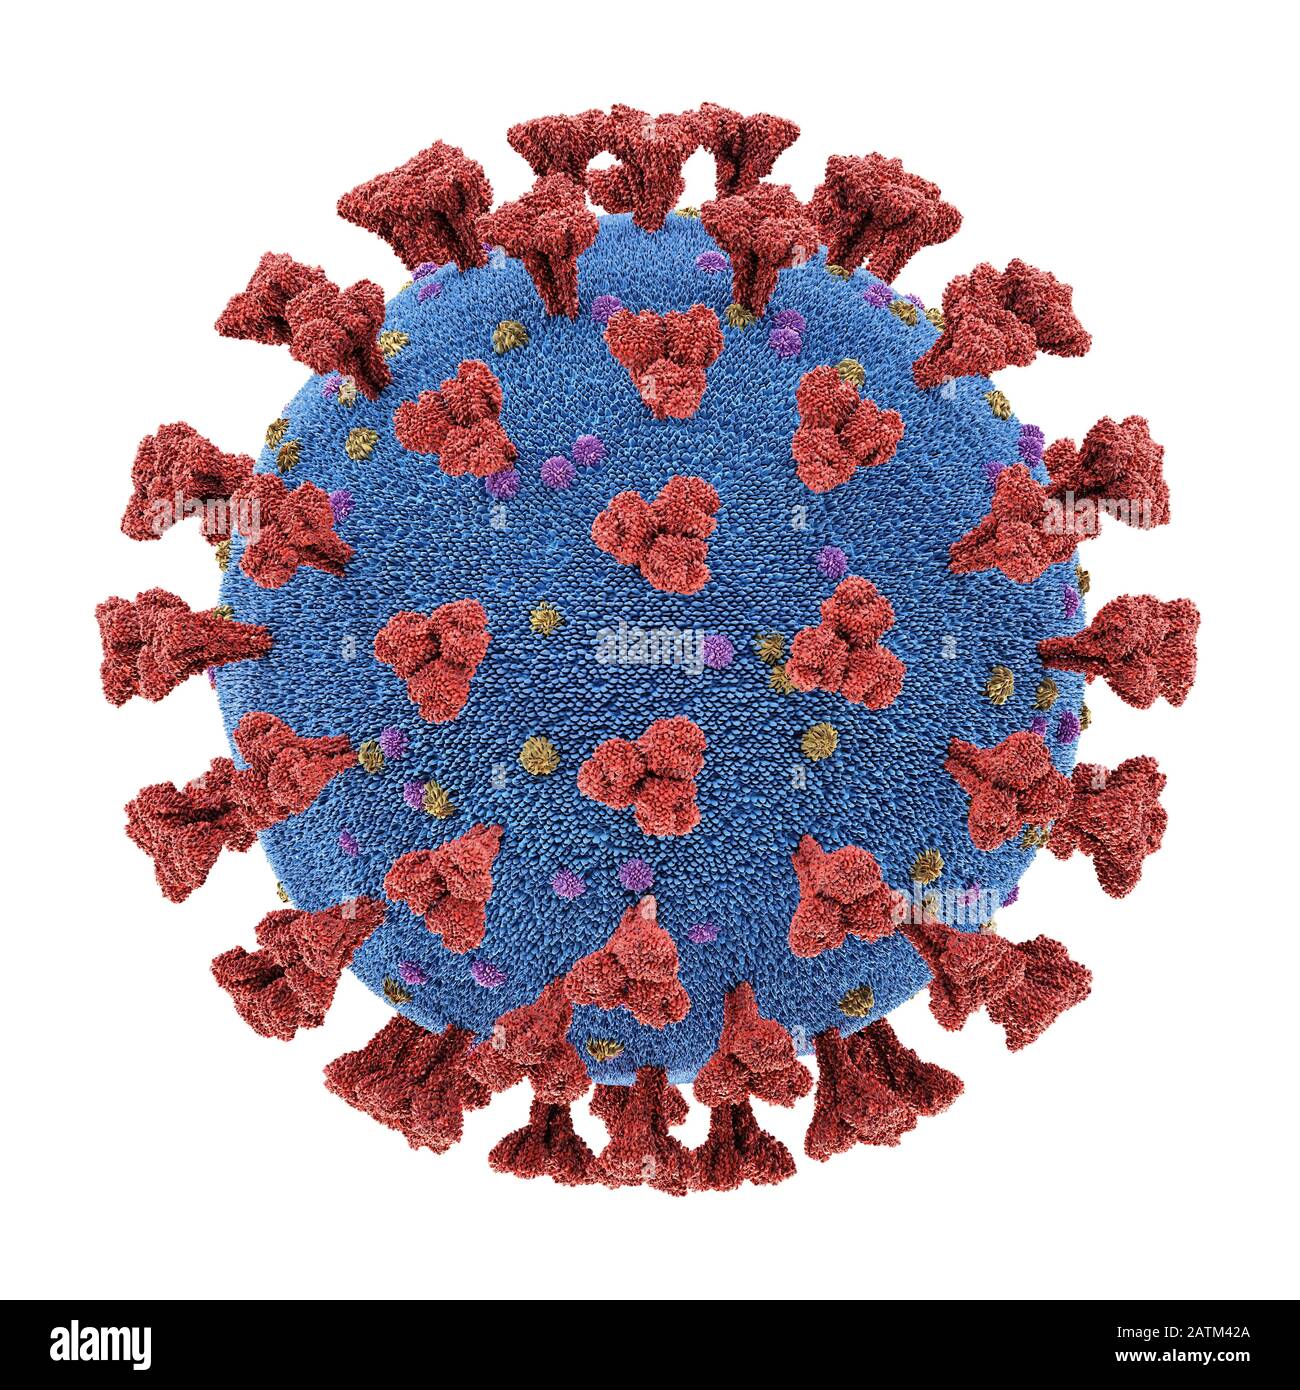 Coronavirus, grupo de virus que causan enfermedades en mamíferos y aves. En los seres humanos, el virus causa infecciones respiratorias. Ilustración 3D, conceptua Foto de stock